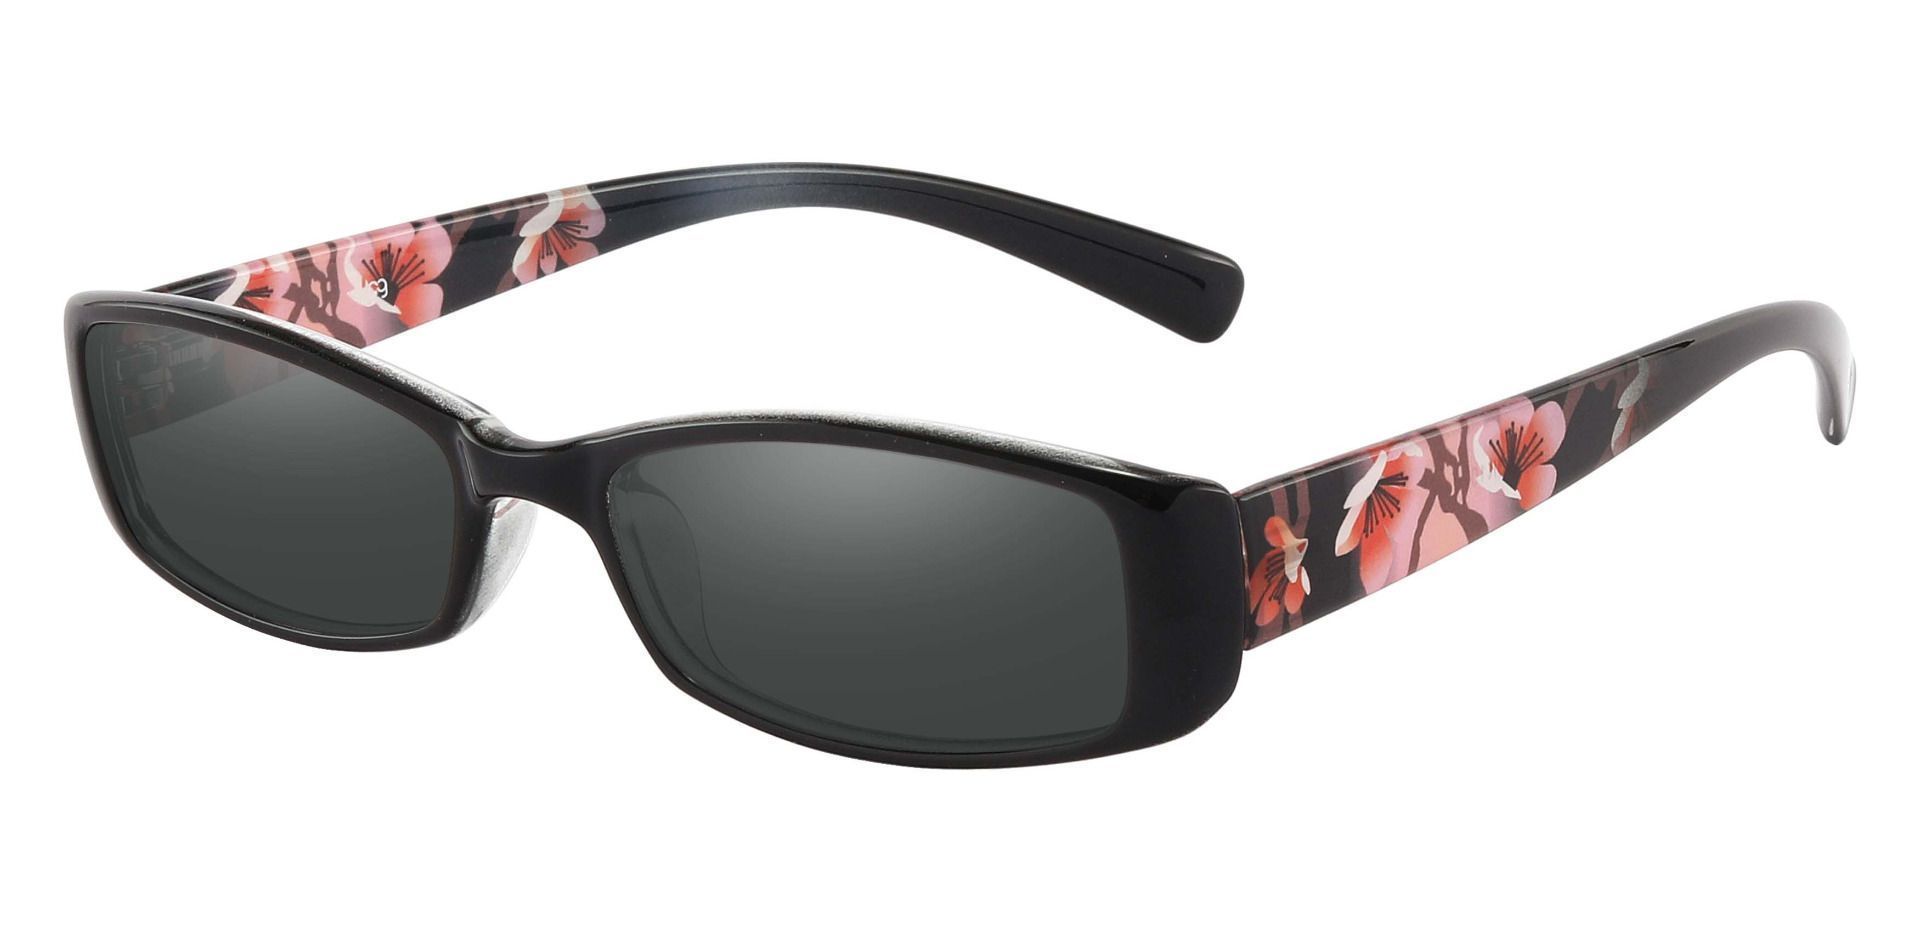 Medora Rectangle Reading Sunglasses - Black Frame With Gray Lenses